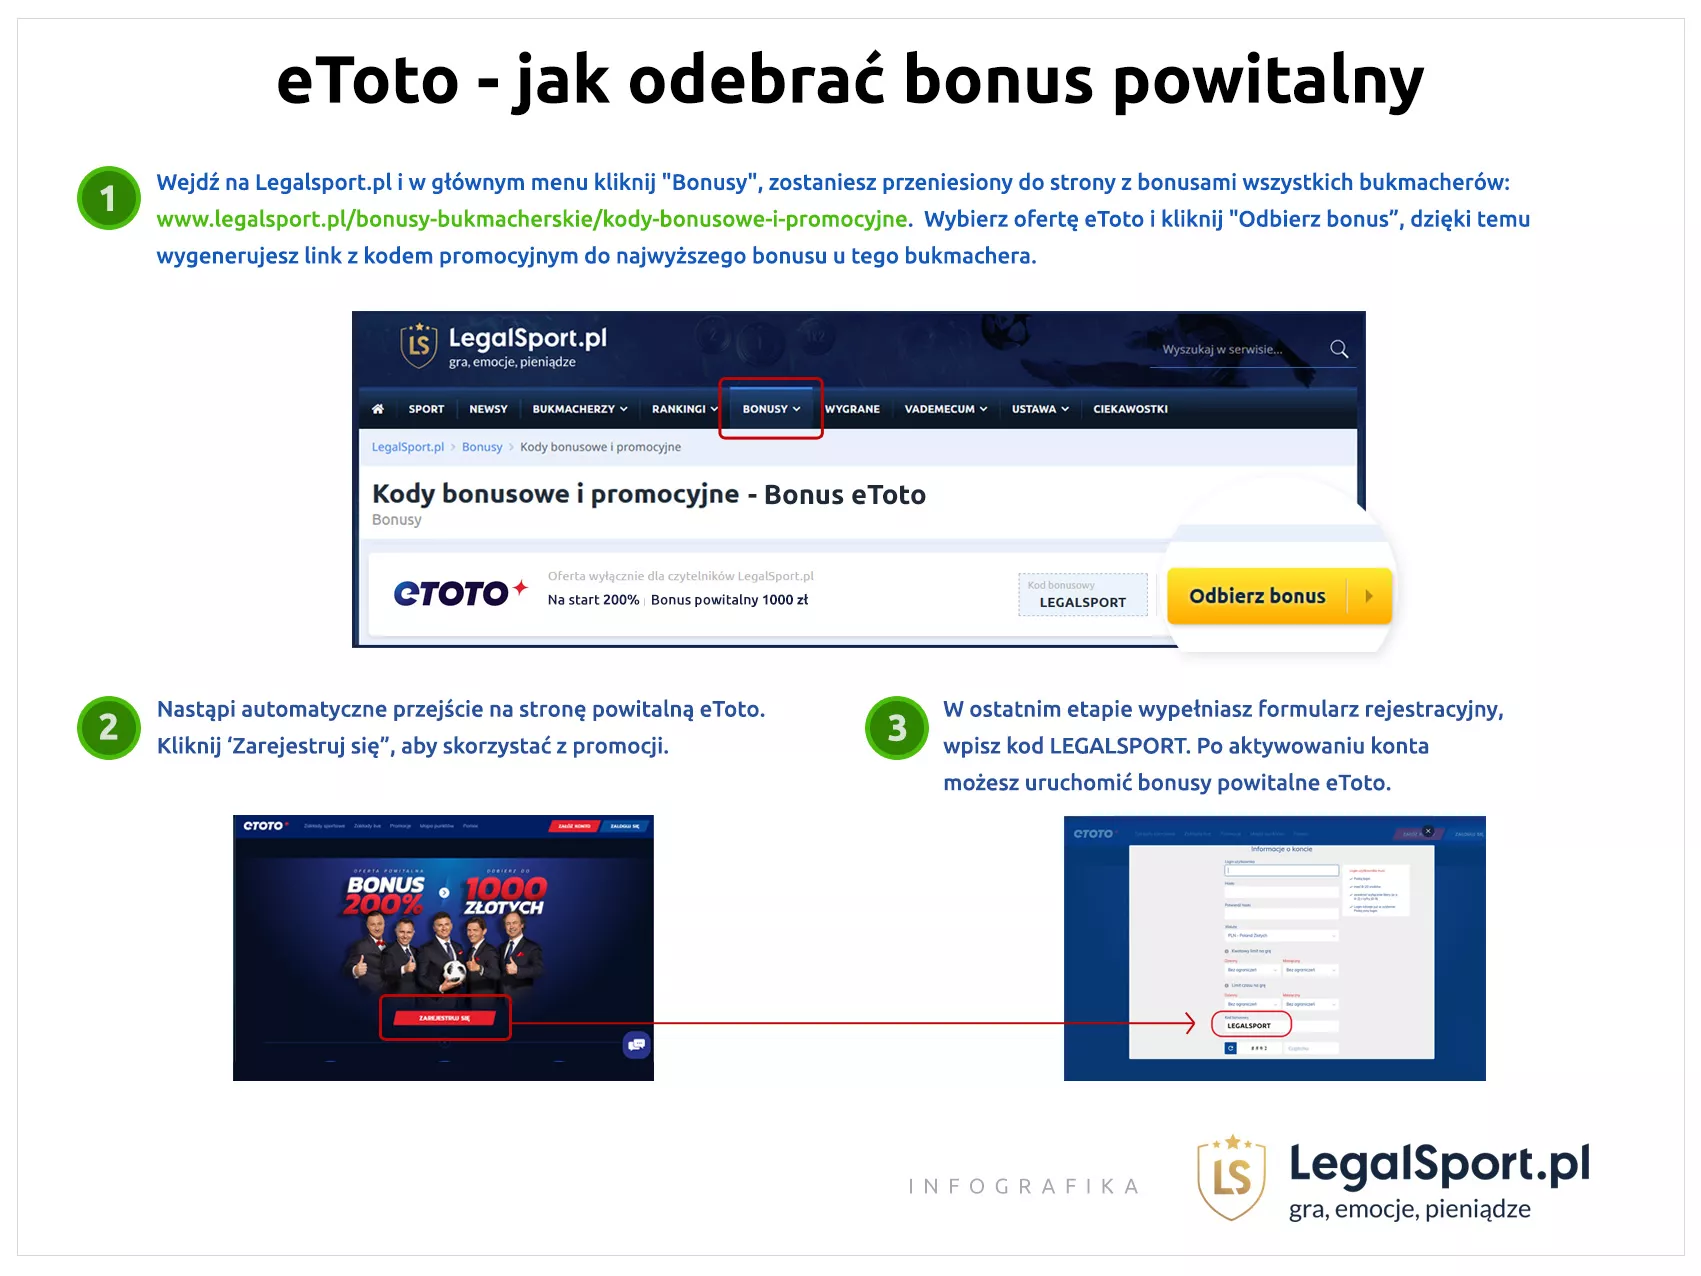 Infografika pomocnicza, która ułatwia rejestrację w eToto Polska z kodem bonusowym LEGALSPORT